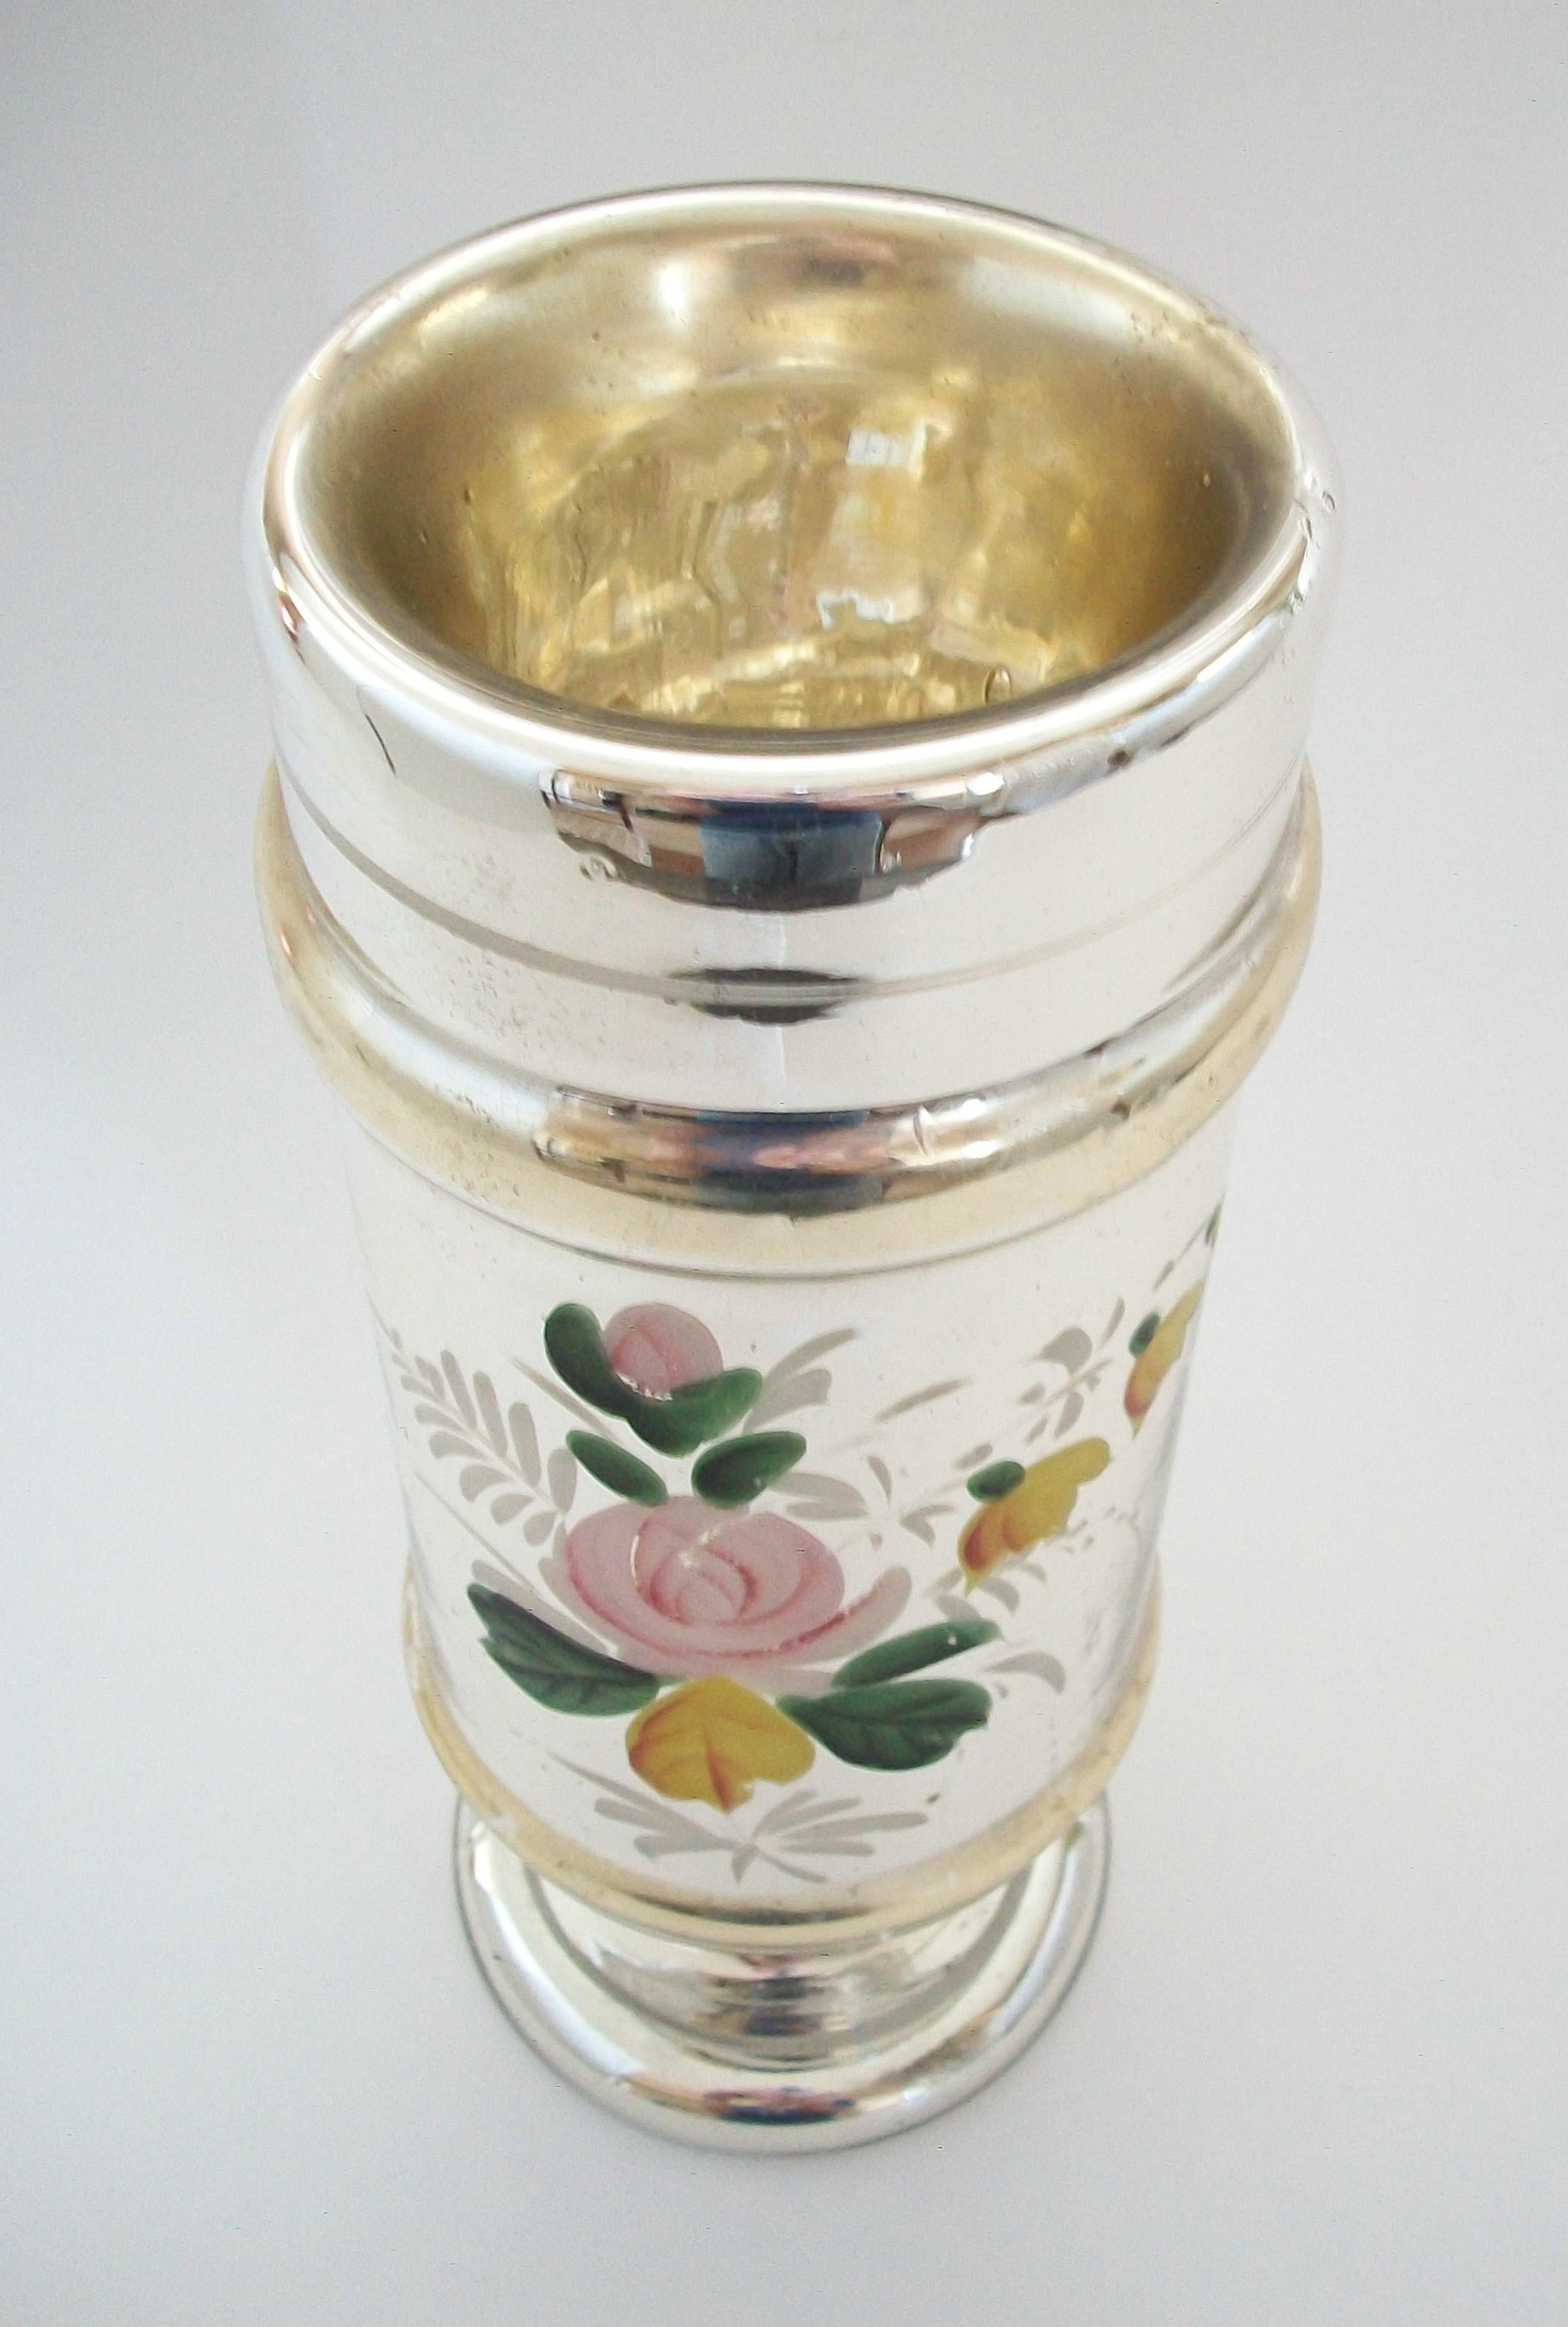 Belle Époque Antique Floral Painted Gold & Silver Mercury Glass Vase - France - 19th Century For Sale